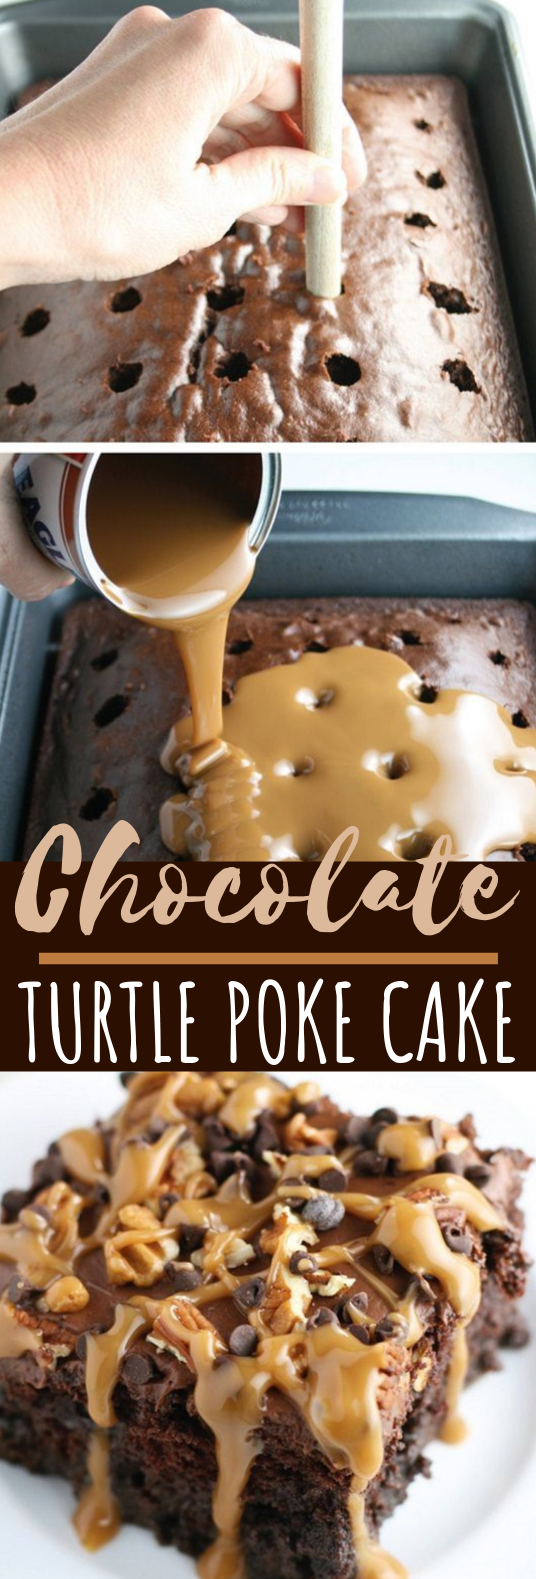 Chocolate Turtle Poke Cake #desserts #cake